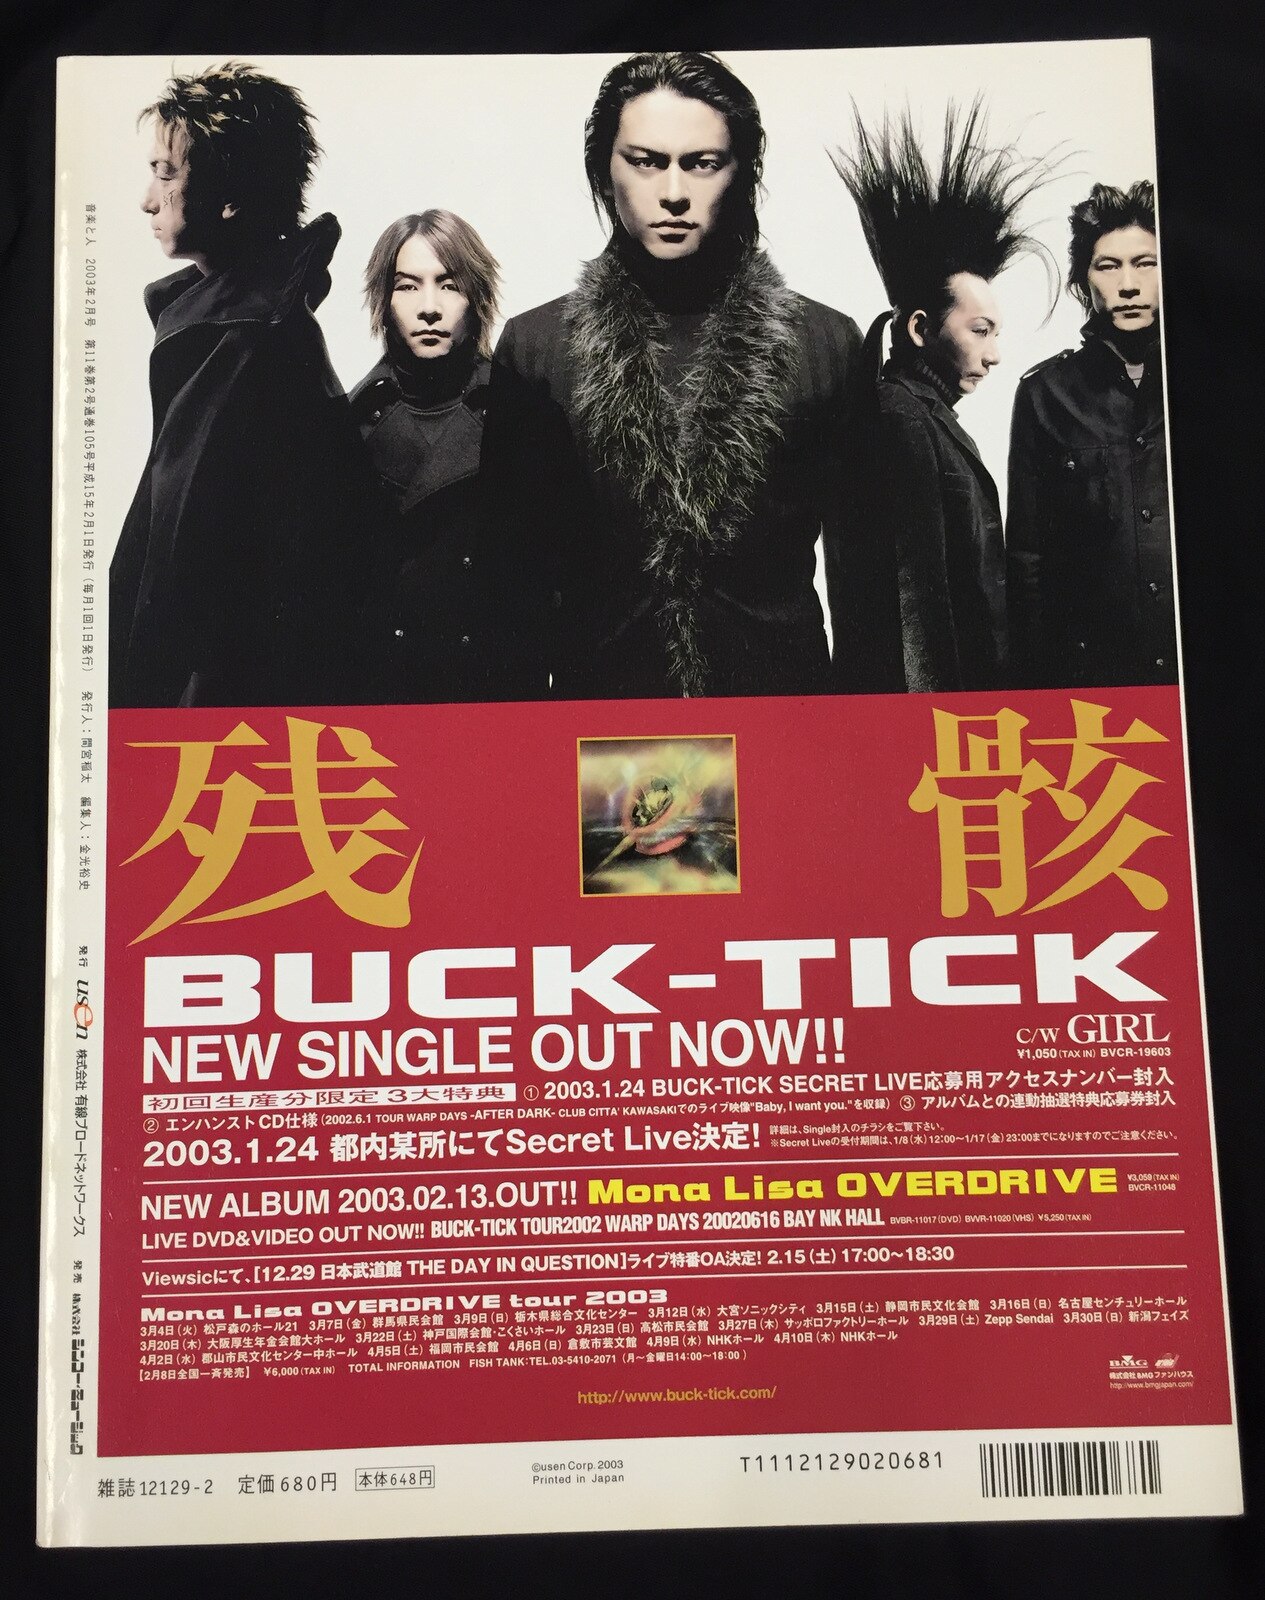 BUCK-TICK 櫻井敦司/今井寿 2003年2月1日発行/雑誌 音楽と人 2003年2月 